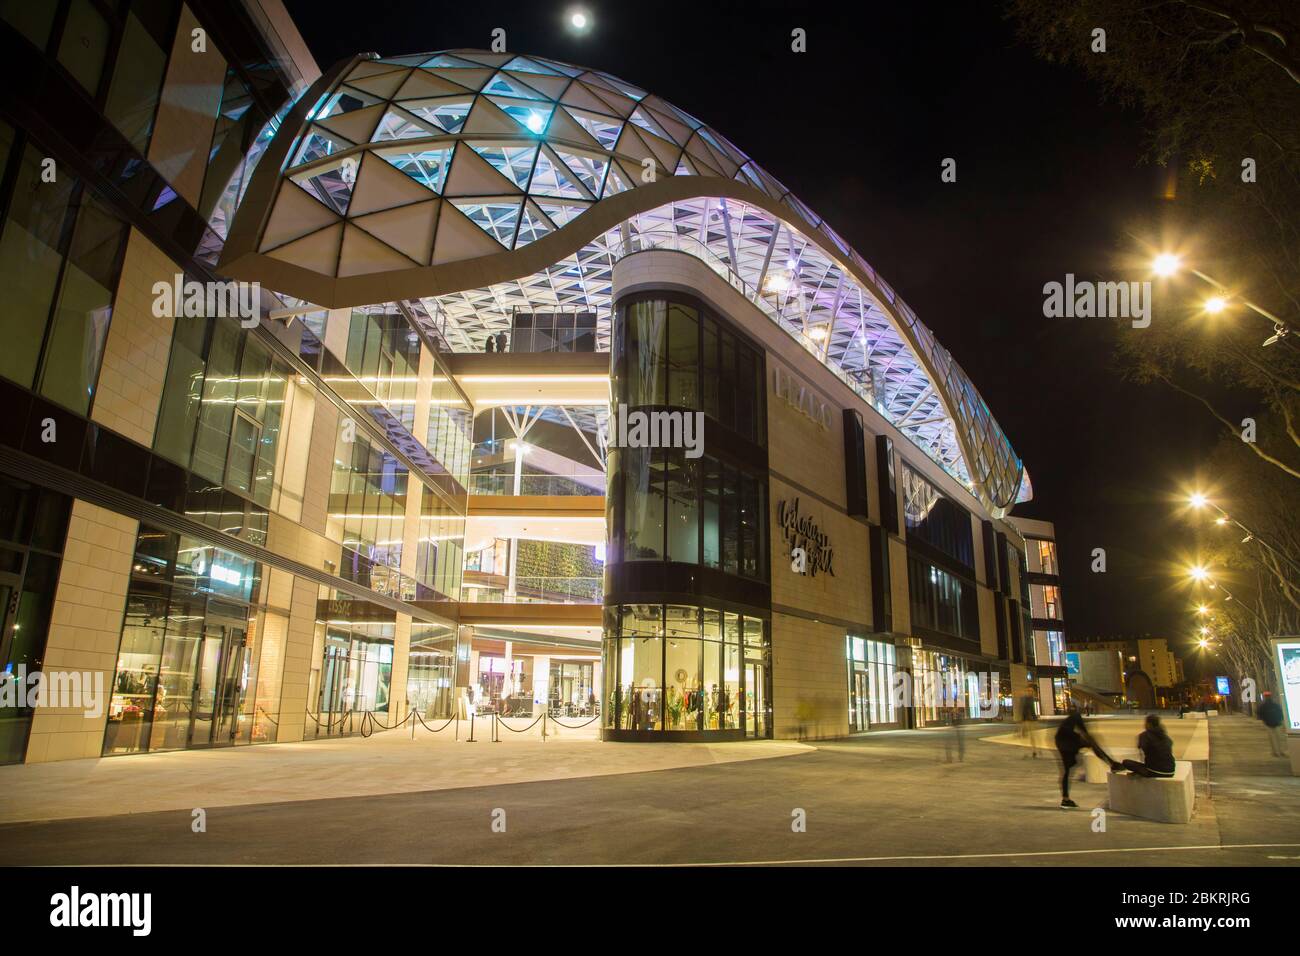 Francia, Bouches du Rhone, Marsella, le Prado, centro comercial de alta  gama al pie del estadio del velódromo, diseñado como centro comercial en 4  niveles con un dosel de vidrio por las